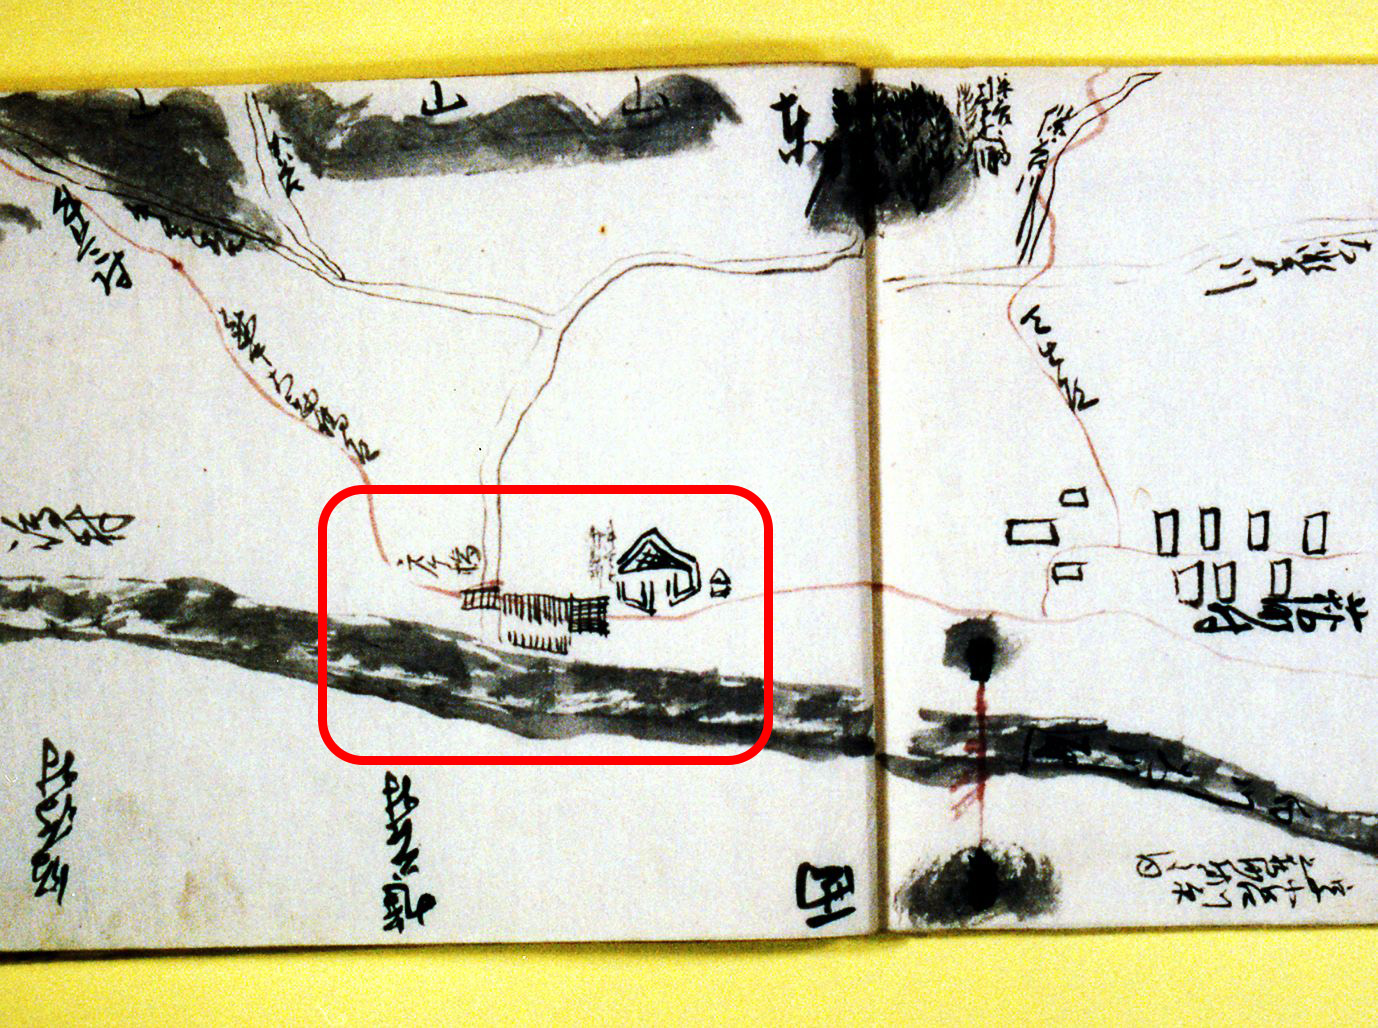 荻町を通る街道に設けられた番所が描かれた地図